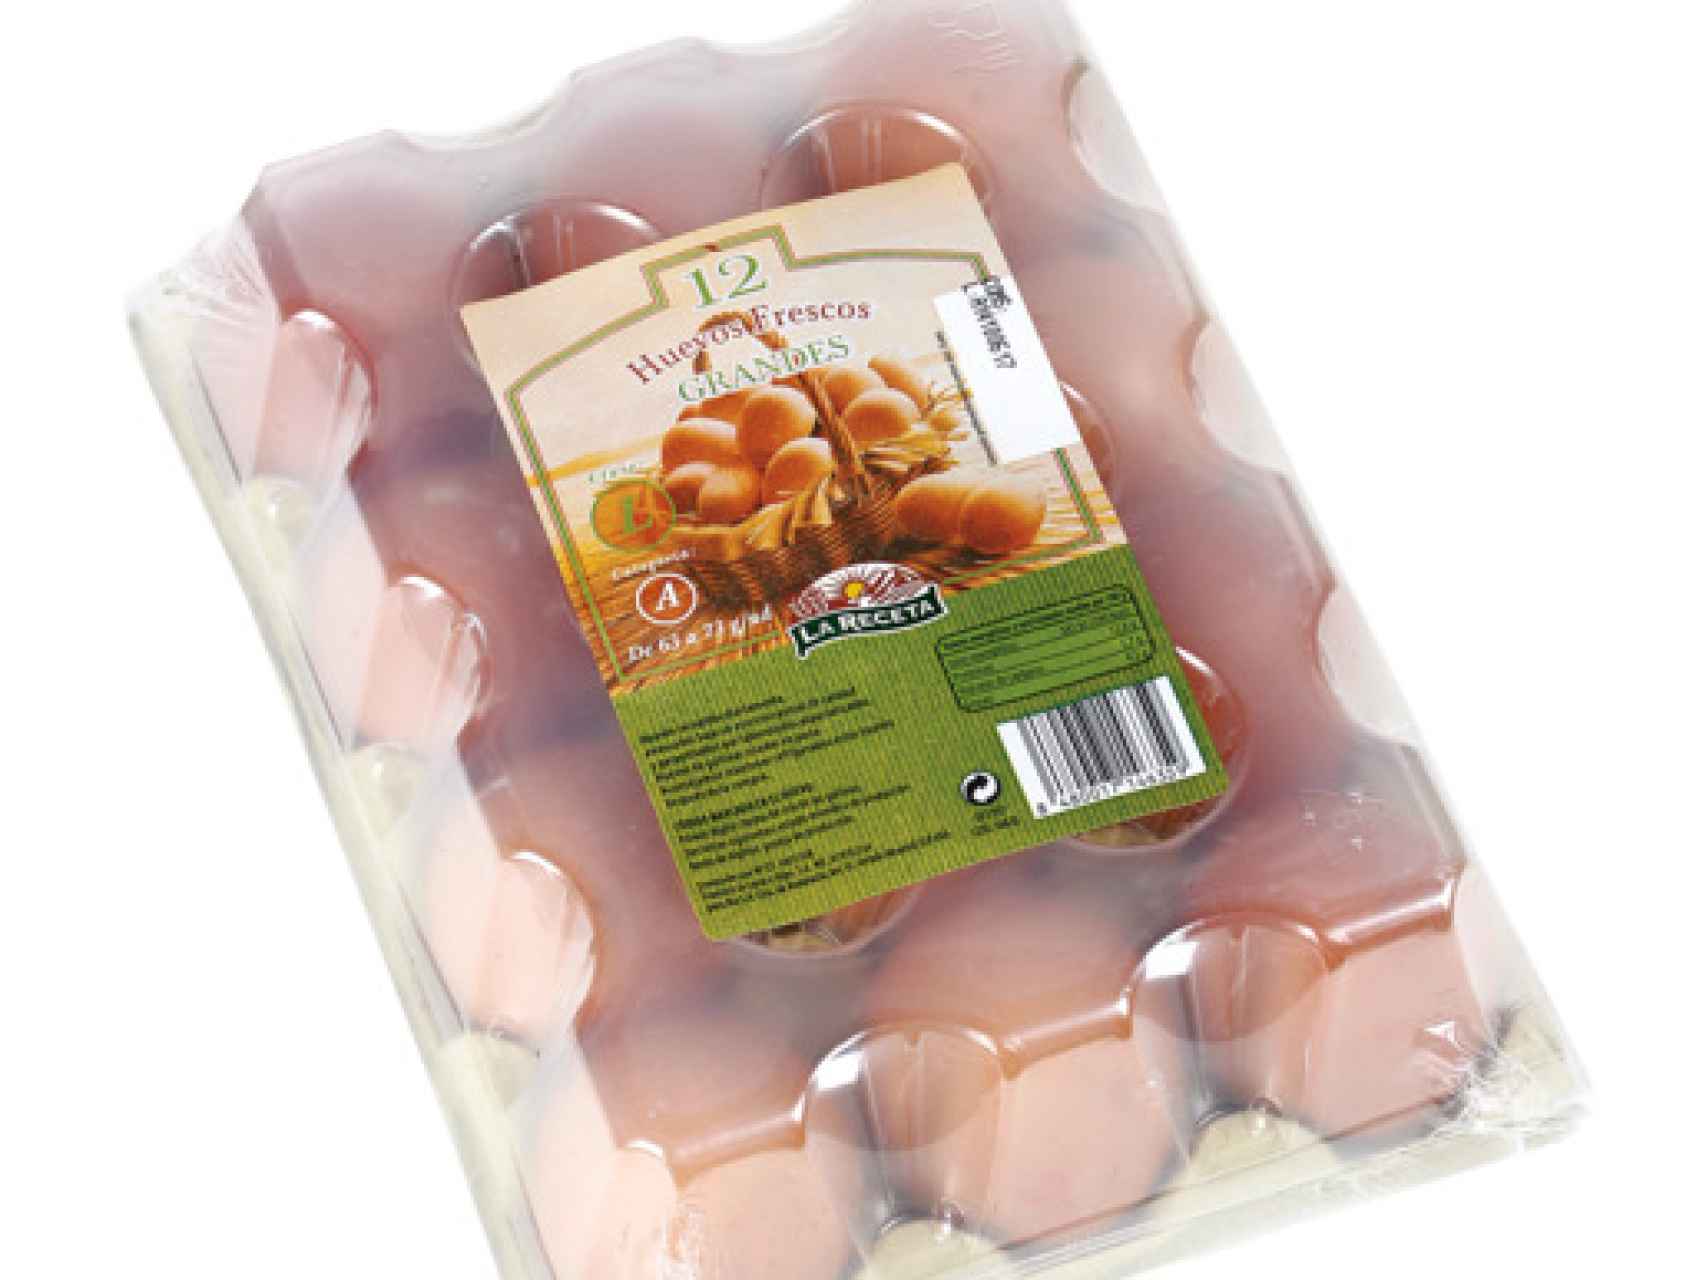 Huevos 'La Receta', la marca blanca de los supermercados Dia.